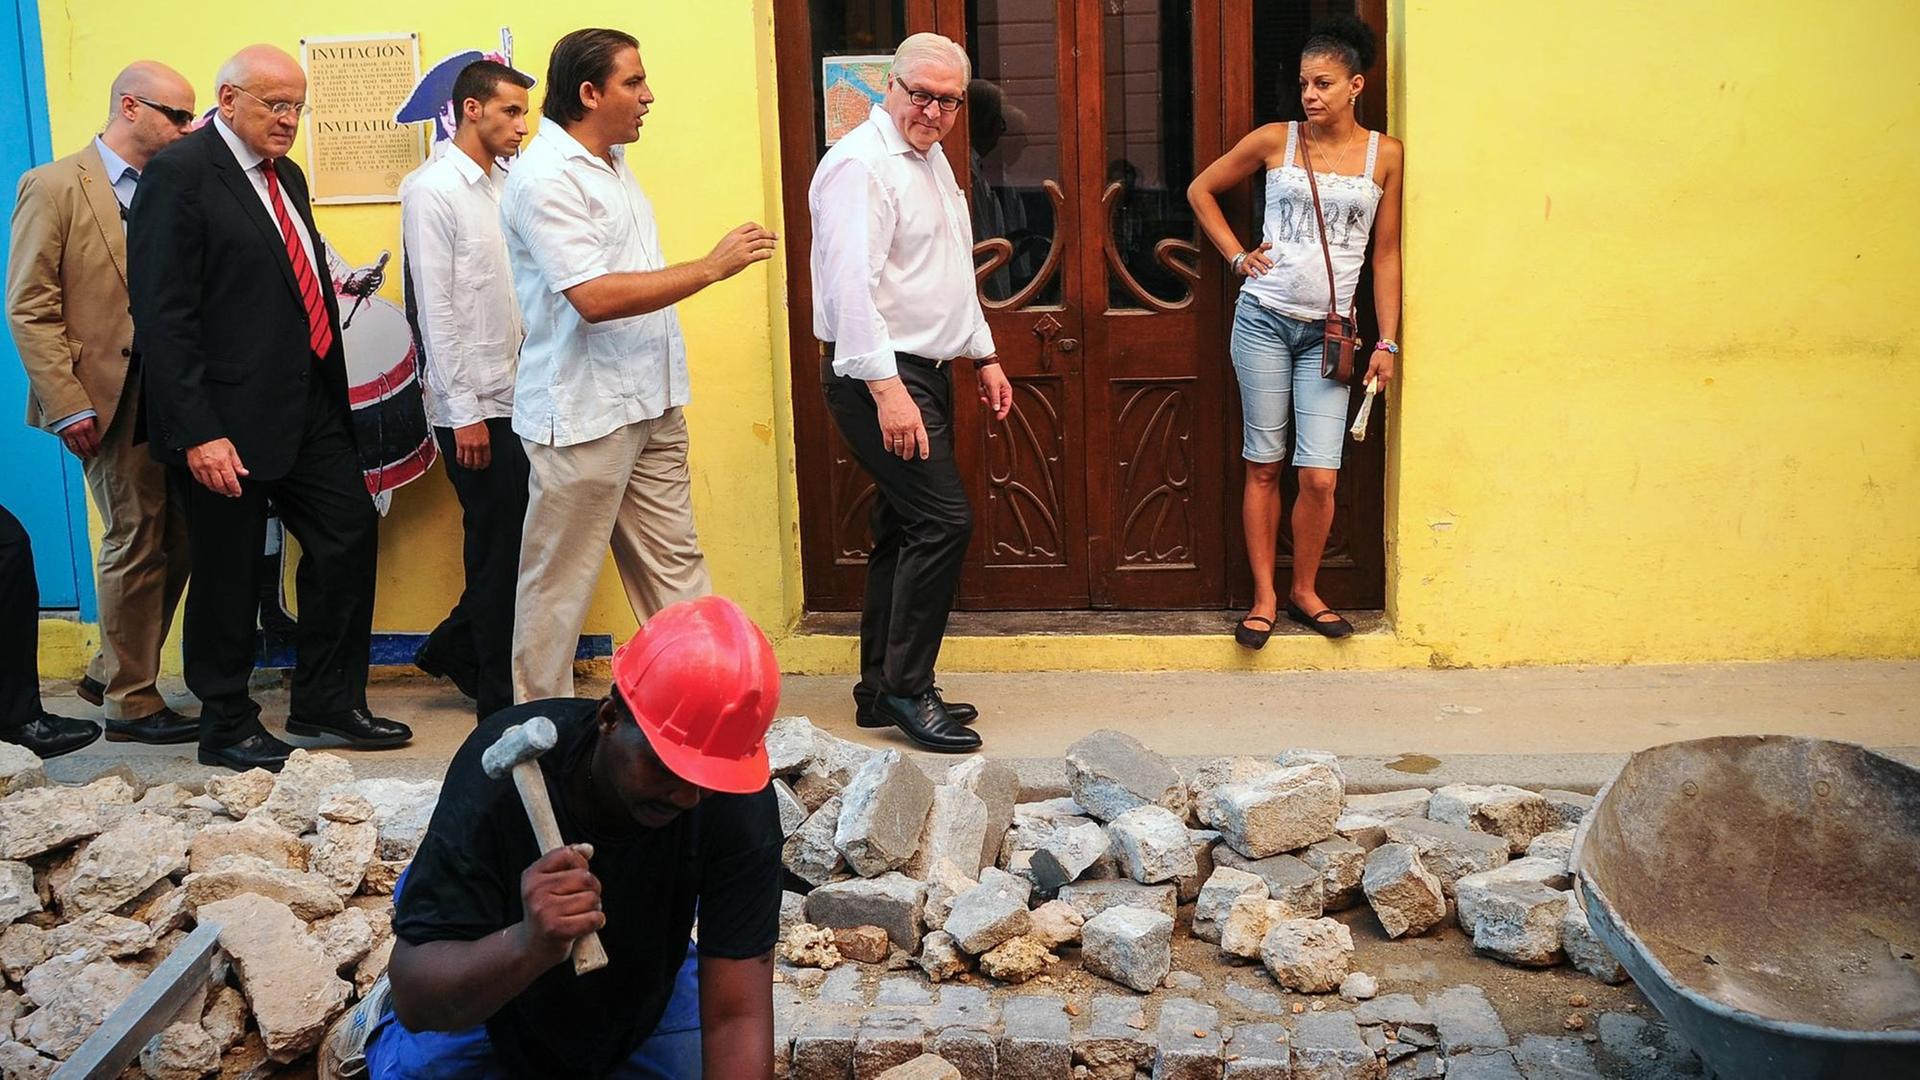 Der deutsche Außenminister Frank-Walter Steinmeier mit Stadtführer und Bodyguards in Havanna.